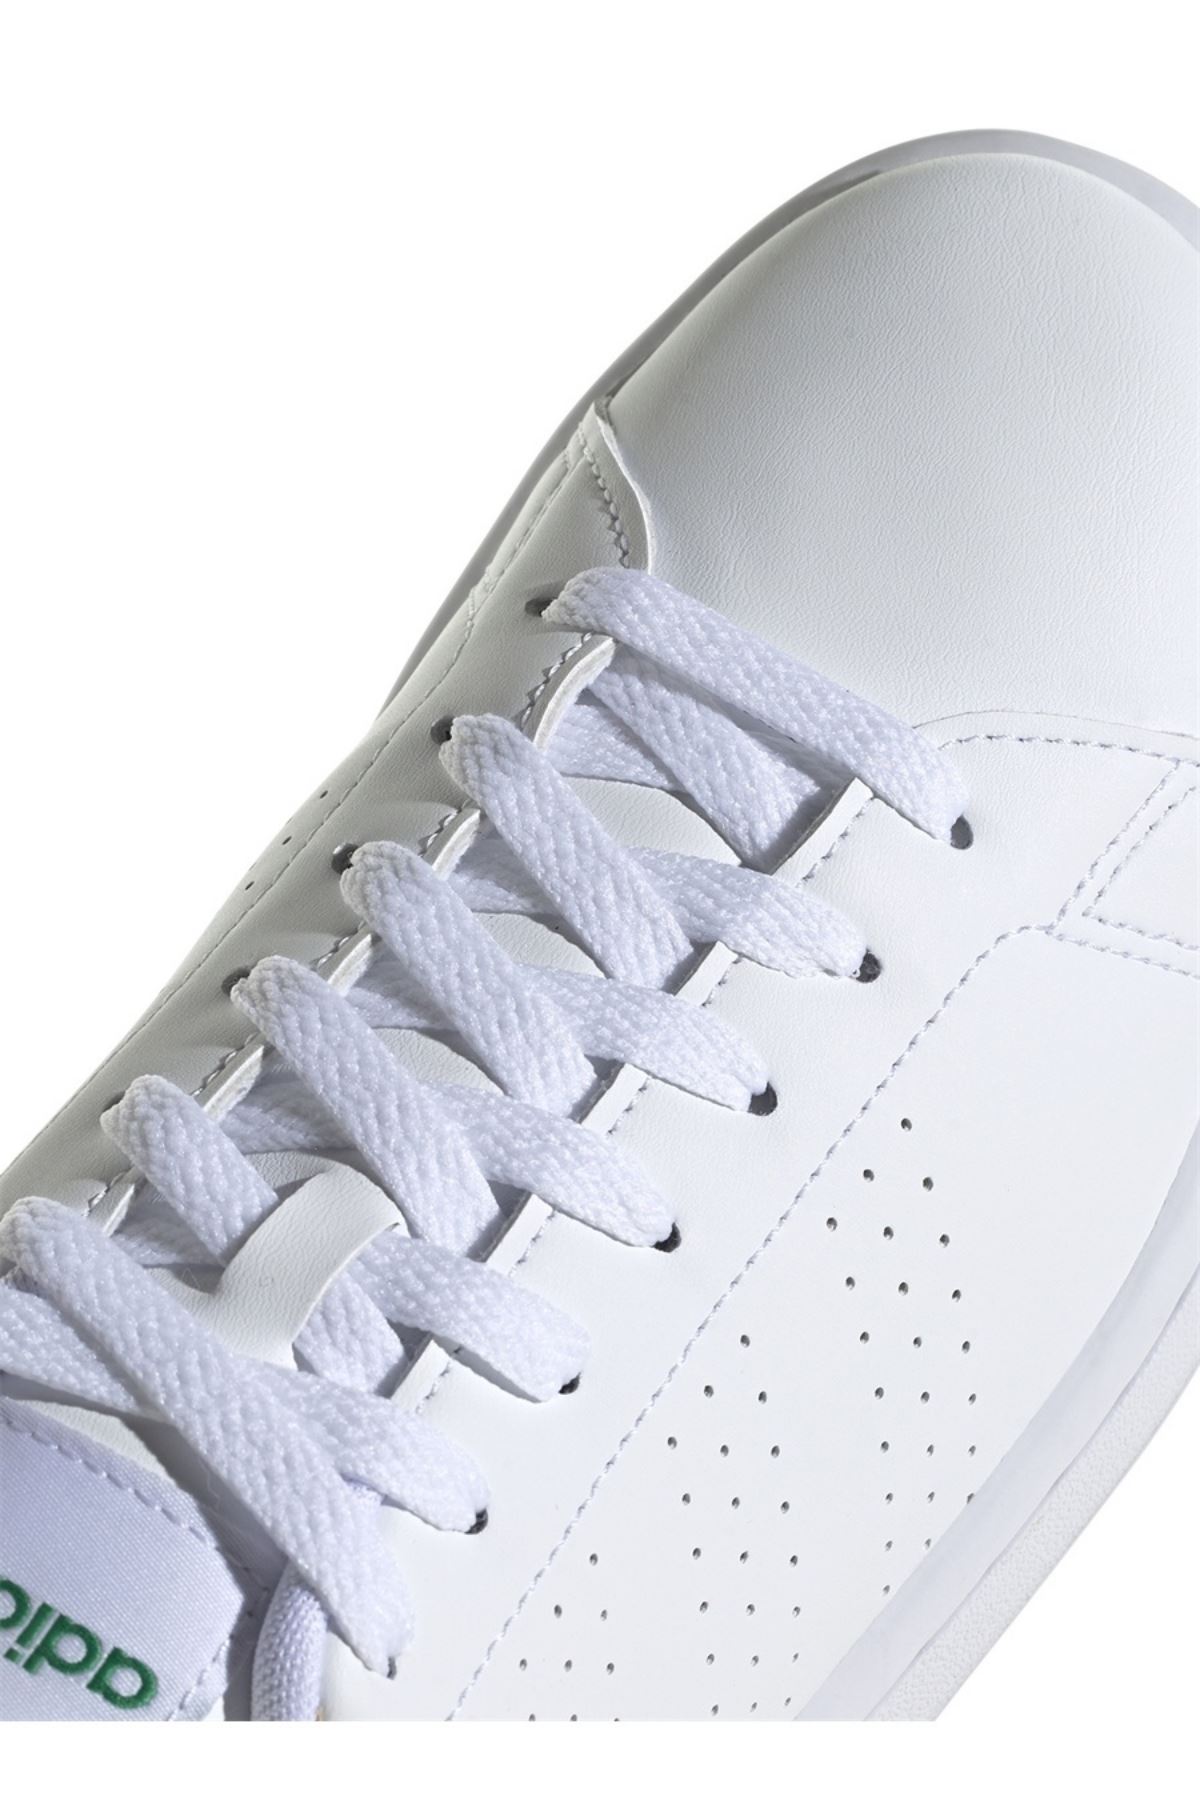 Adidas Advantage Erkek Beyaz Spor Ayakkabı - GZ5300